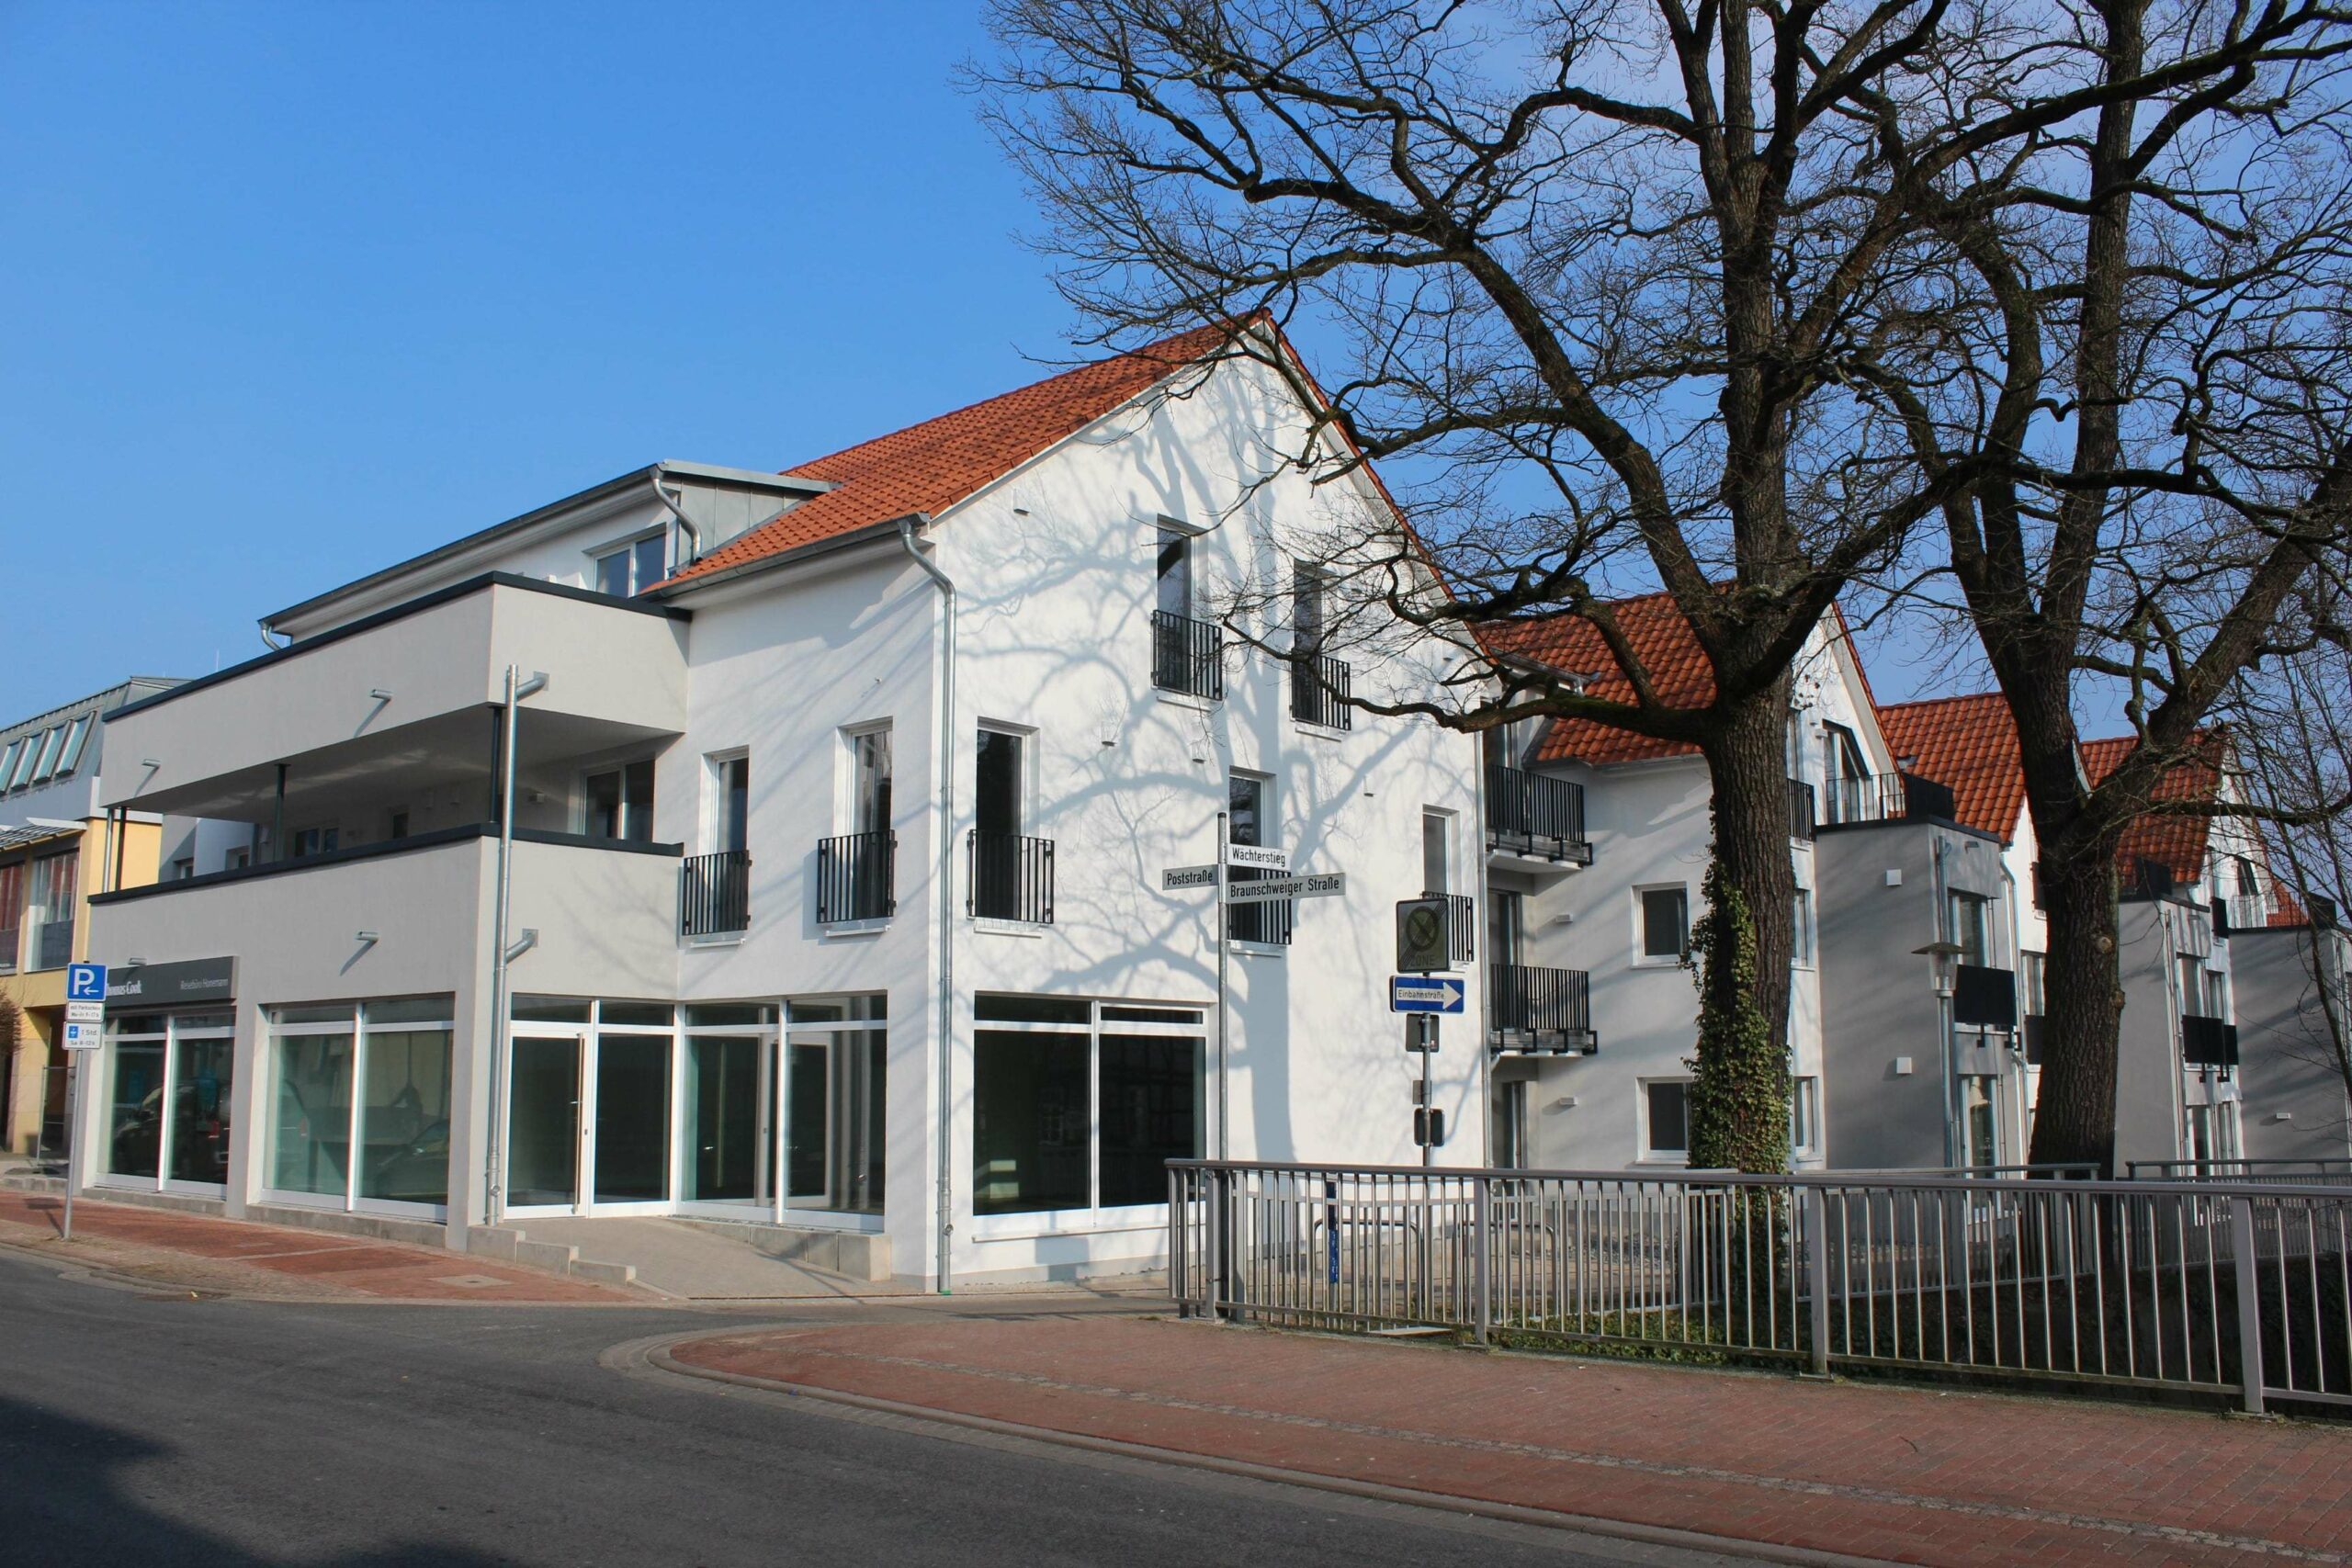 Vermietung: Moderne Ladenfläche im Zentrum von Burgdorf, 31303 Burgdorf, Ladenfläche